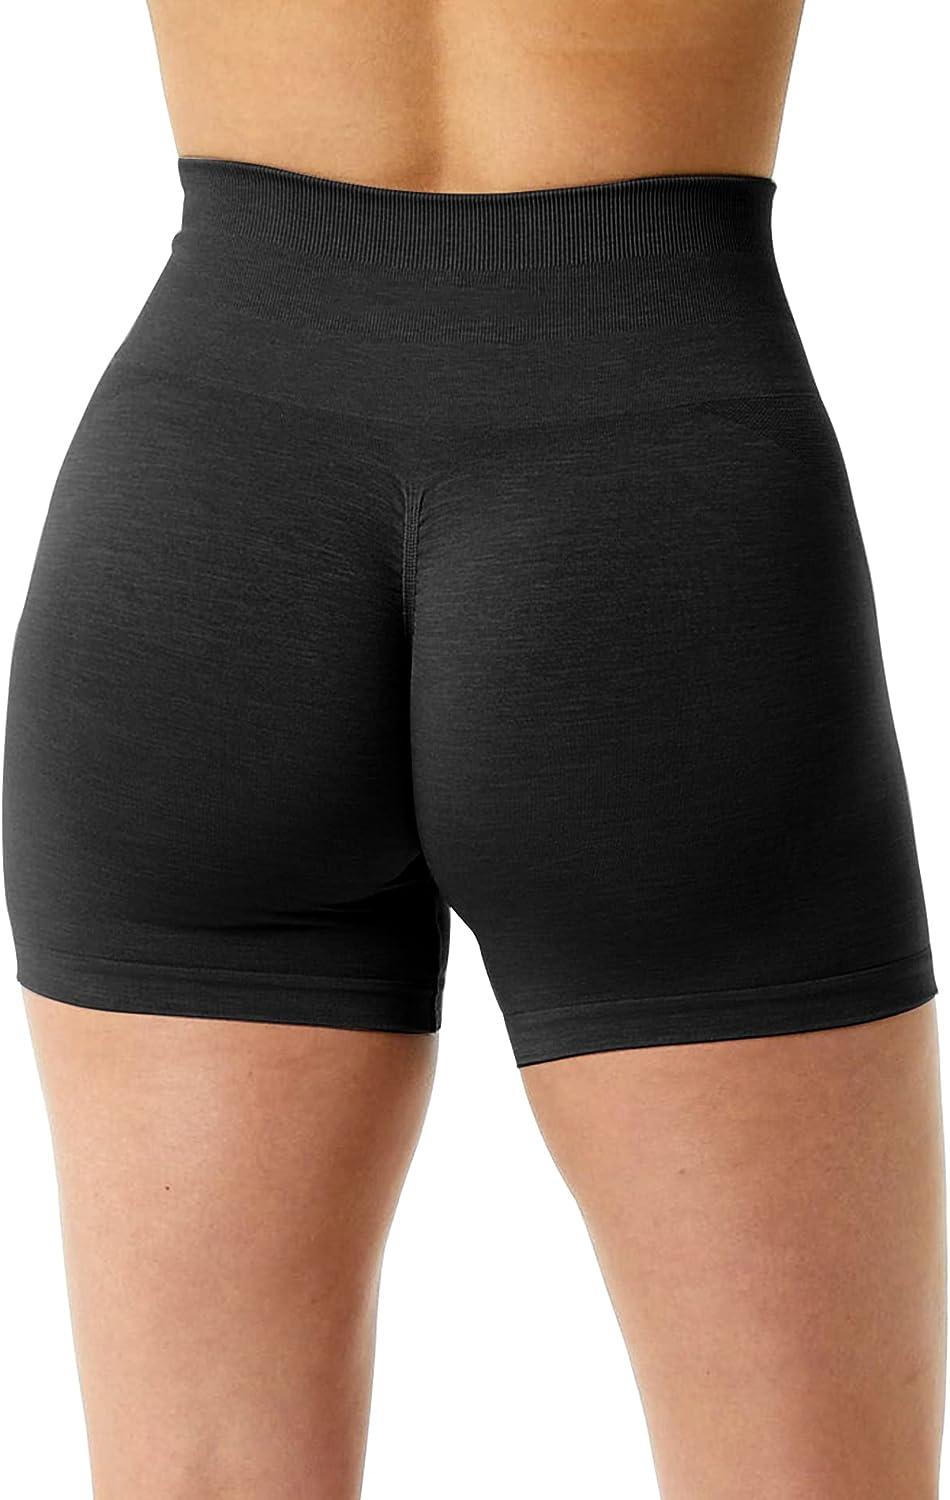 RUUHEE Women Seamless Scrunch Butt Contour Yoga Short 5 High Waist Booty  Workout Biker Shorts, Brown, Medium : : Clothing, Shoes &  Accessories